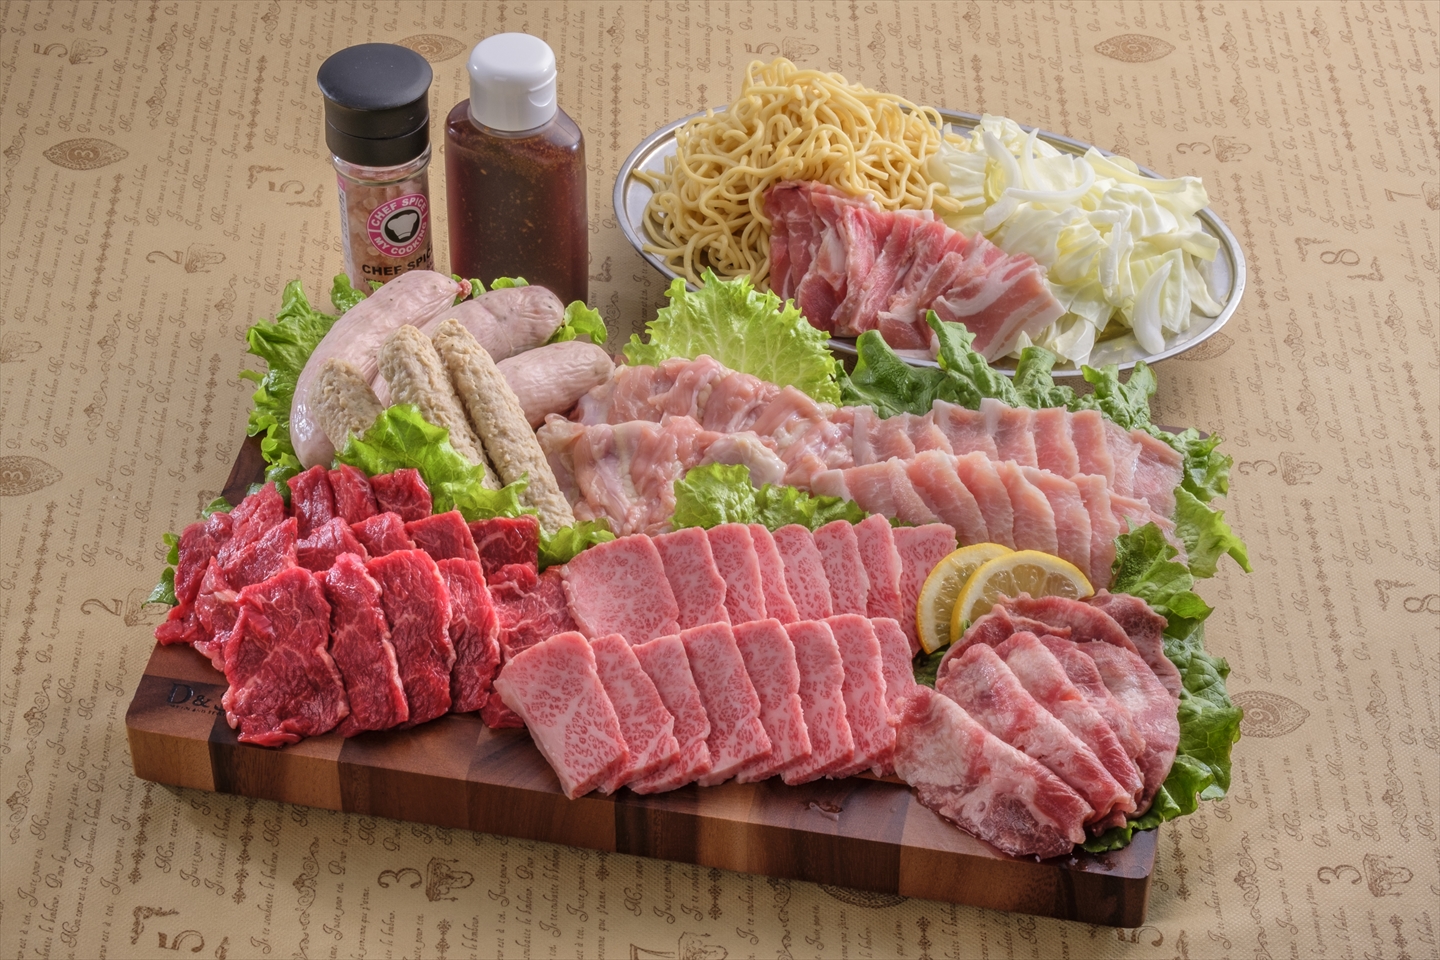 ガッツリ満ぷくプラン(お1人様) | 熊本で出張バーベキュー(BBQ)年間実績2万人のお肉屋|くたみや